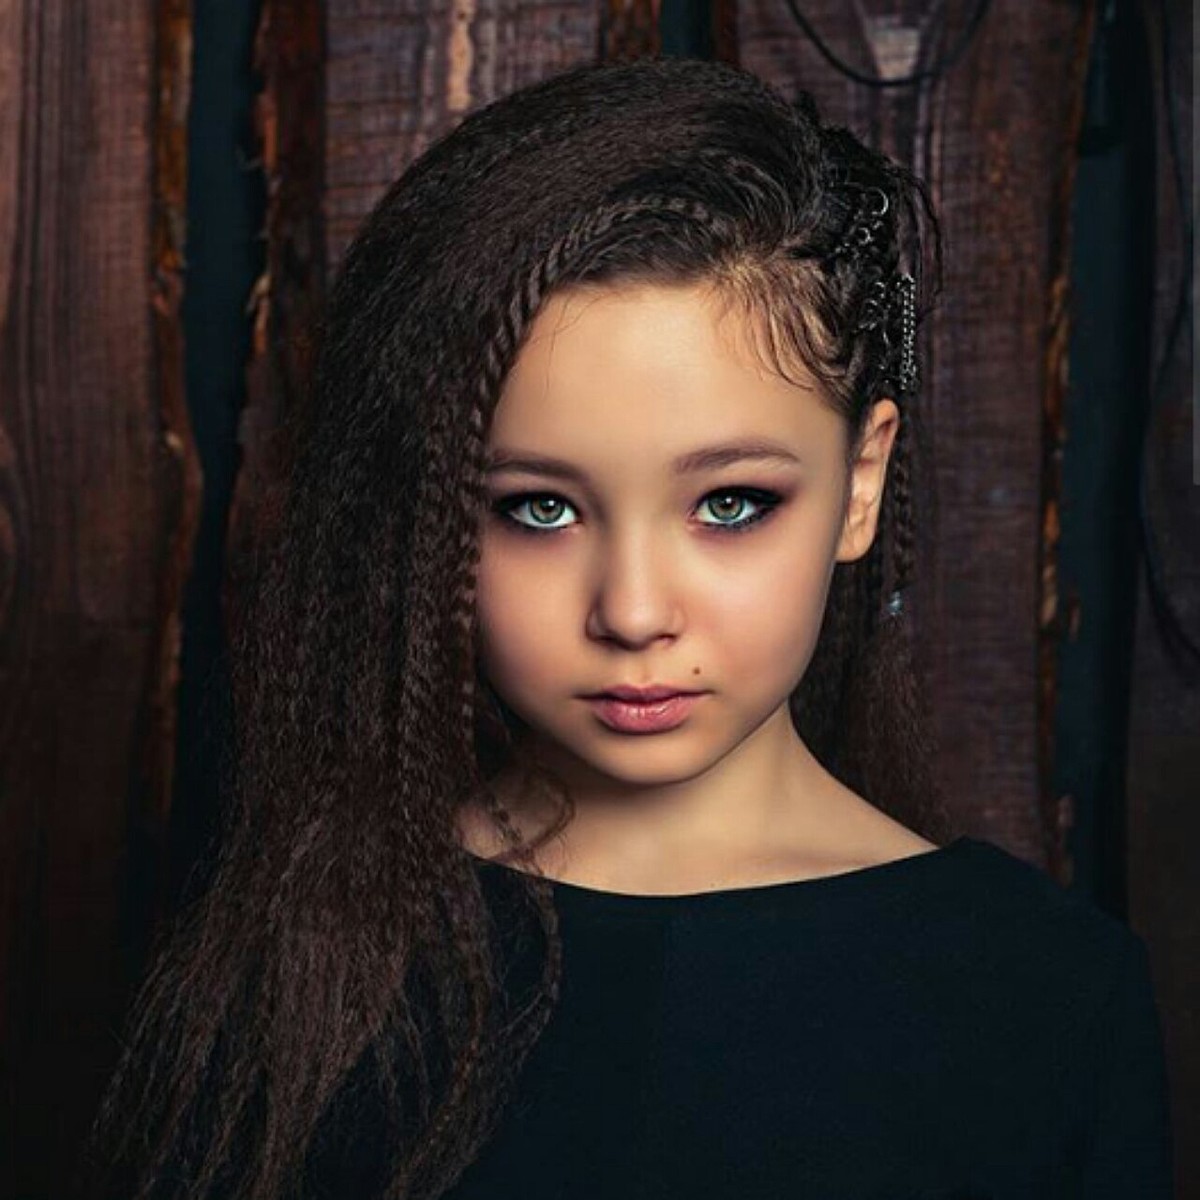 Ульяна 11 лет